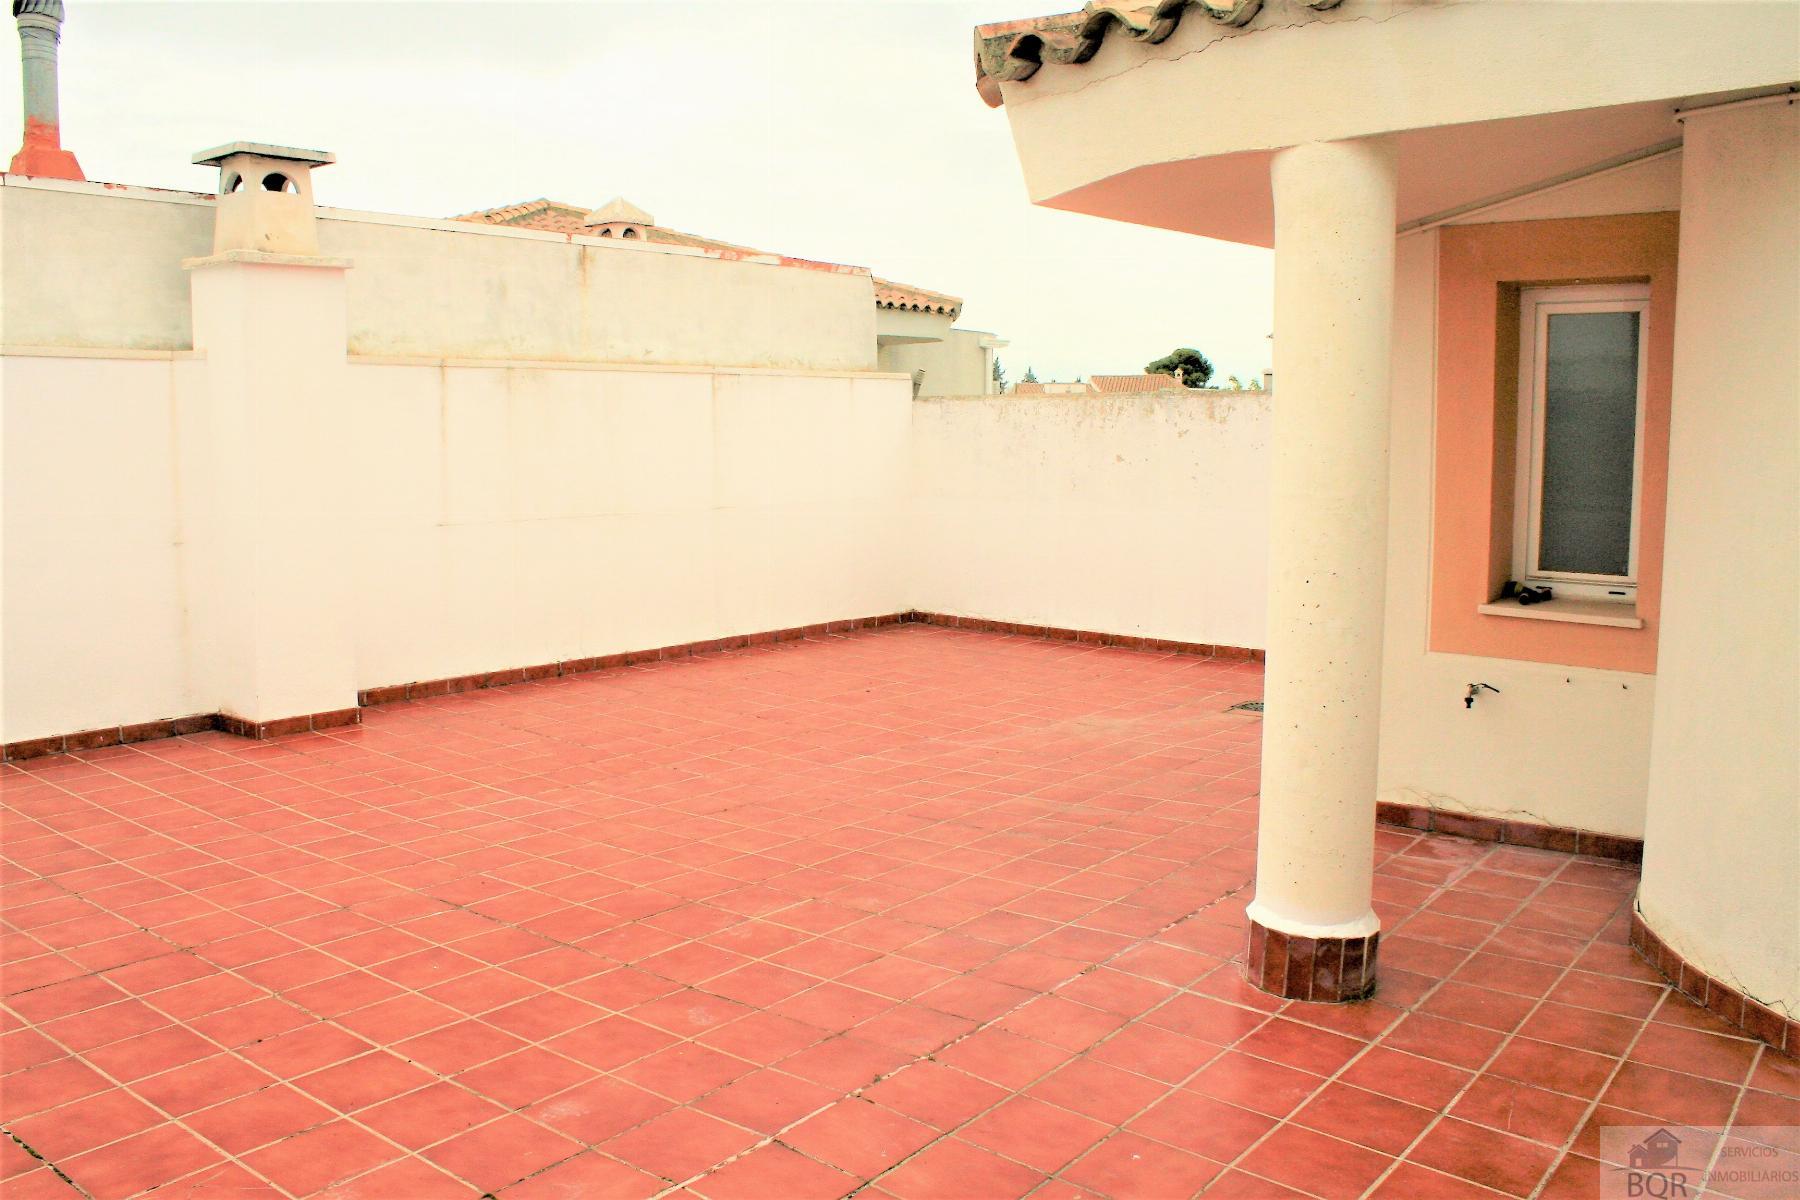 Verkoop van penthouse in Jerez de la Frontera